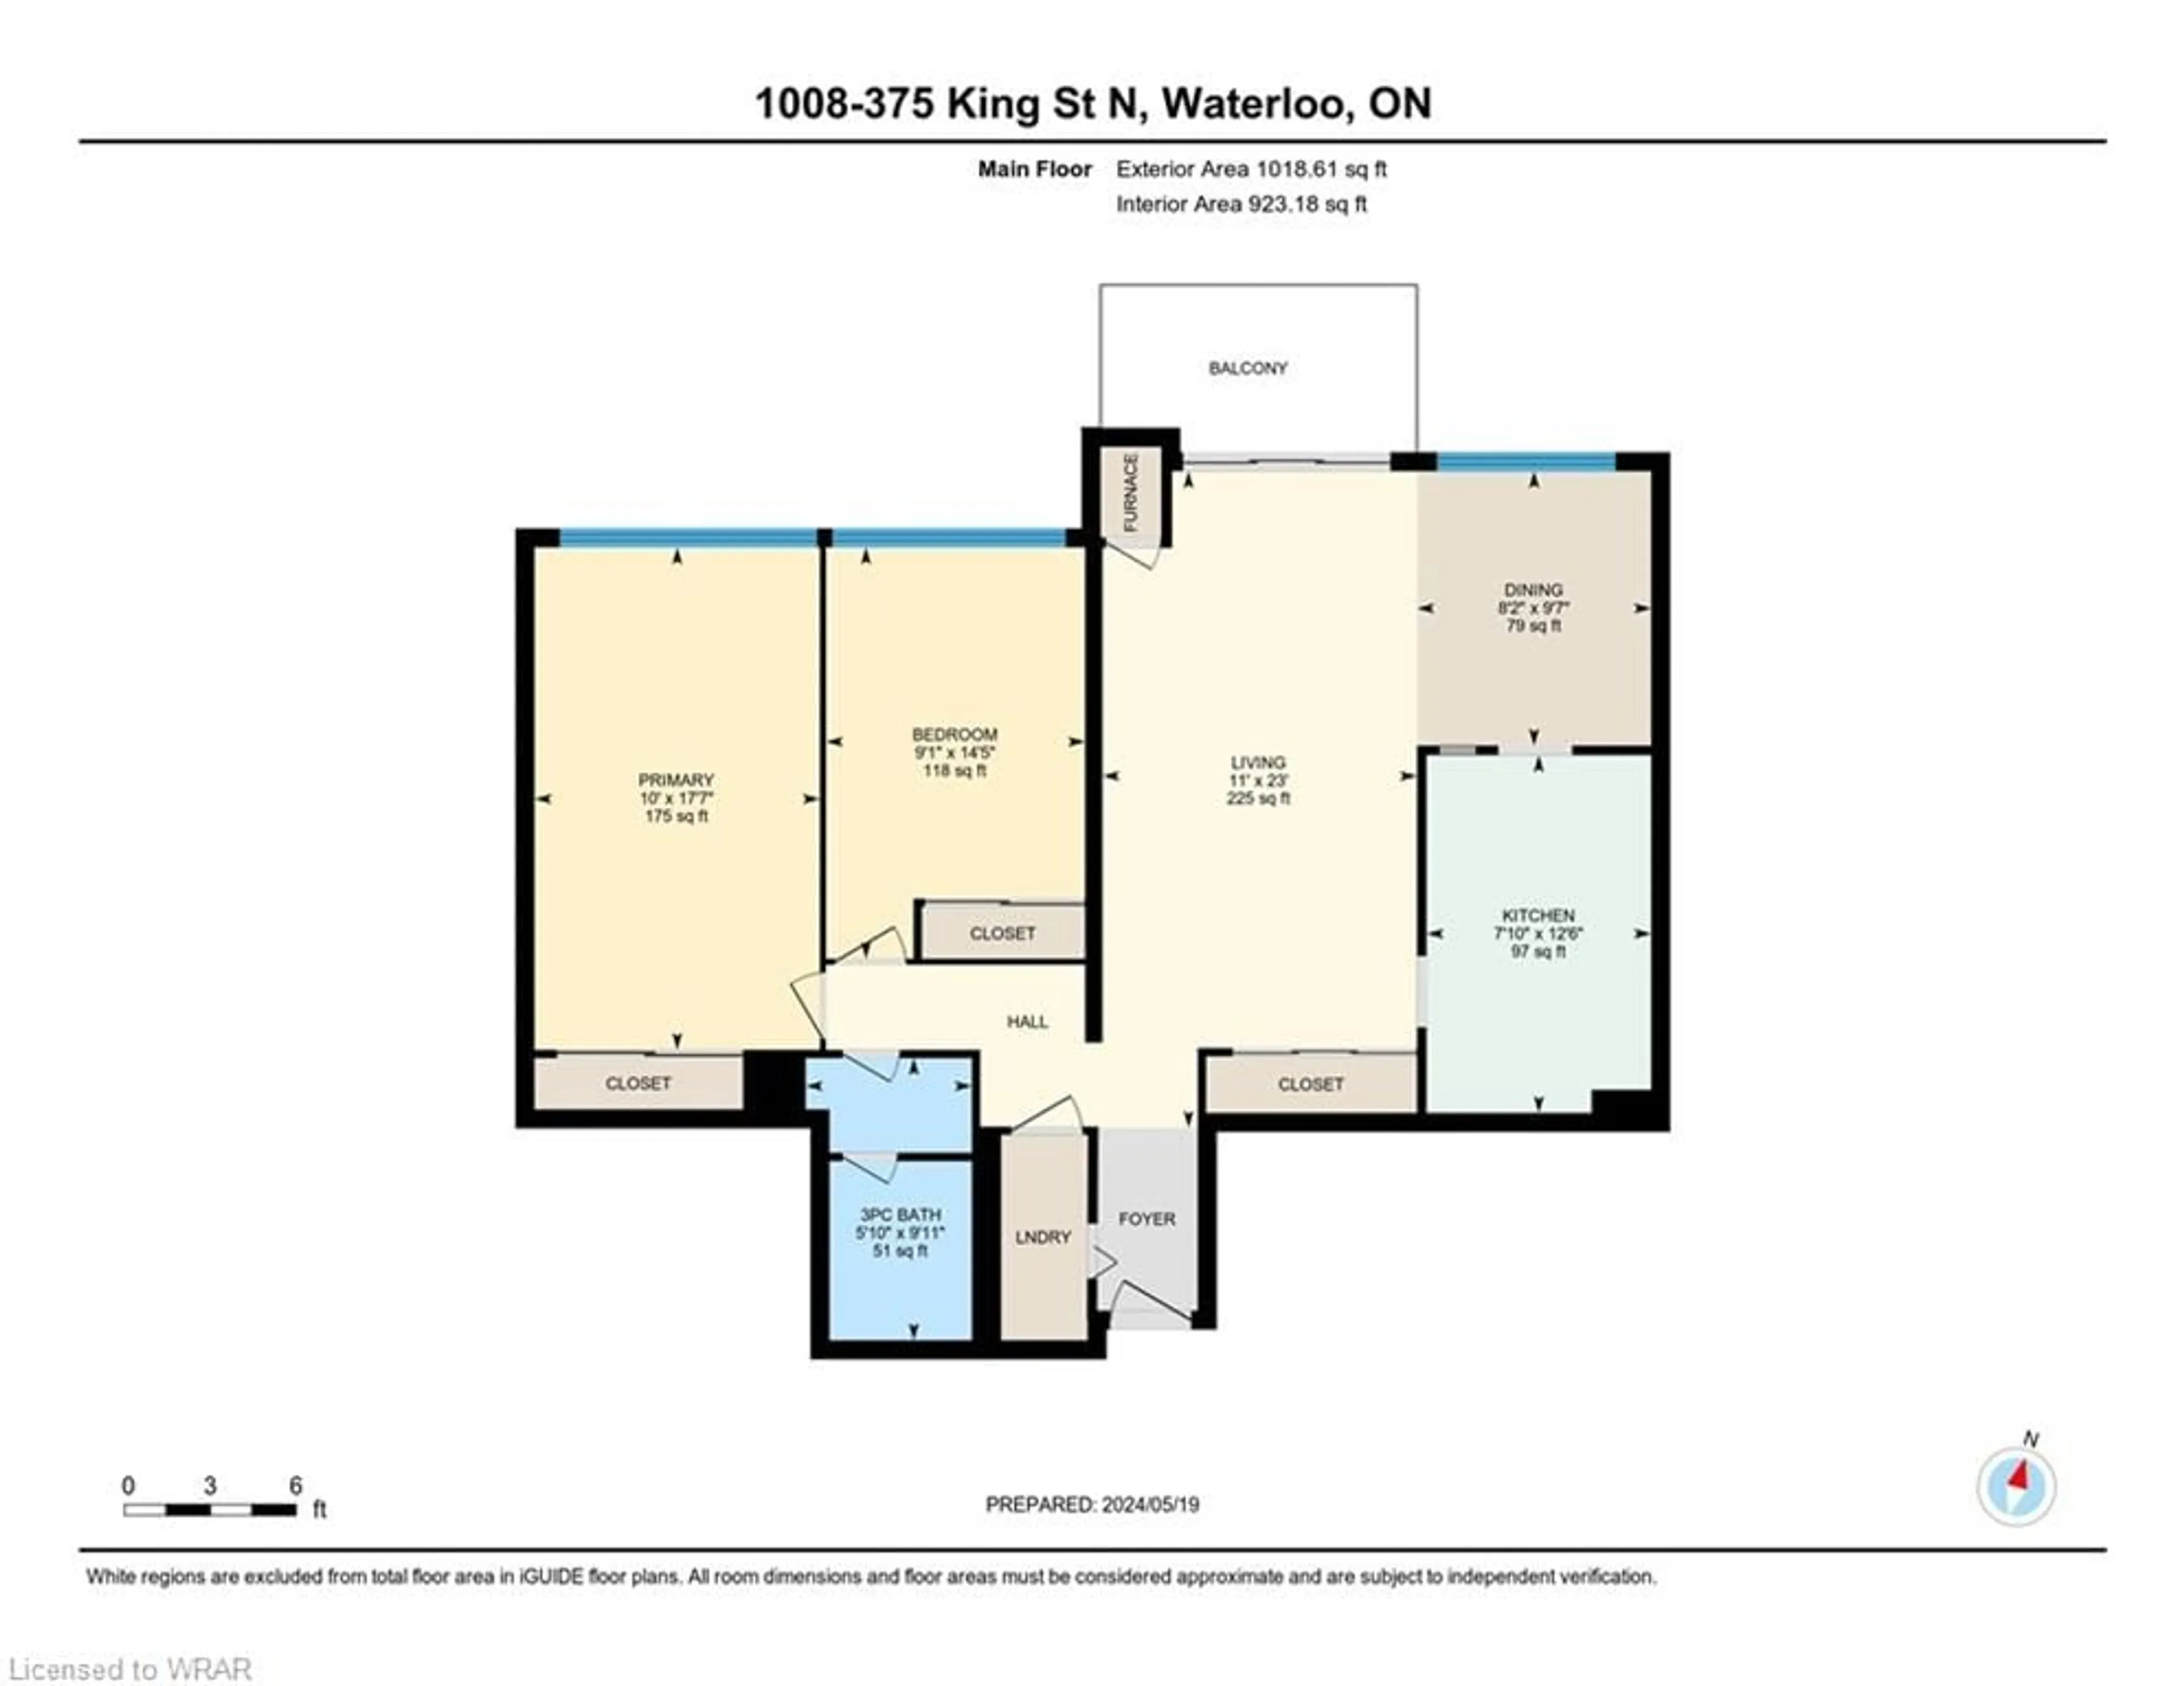 Floor plan for 375 King St #1008, Waterloo Ontario N2J 4L6